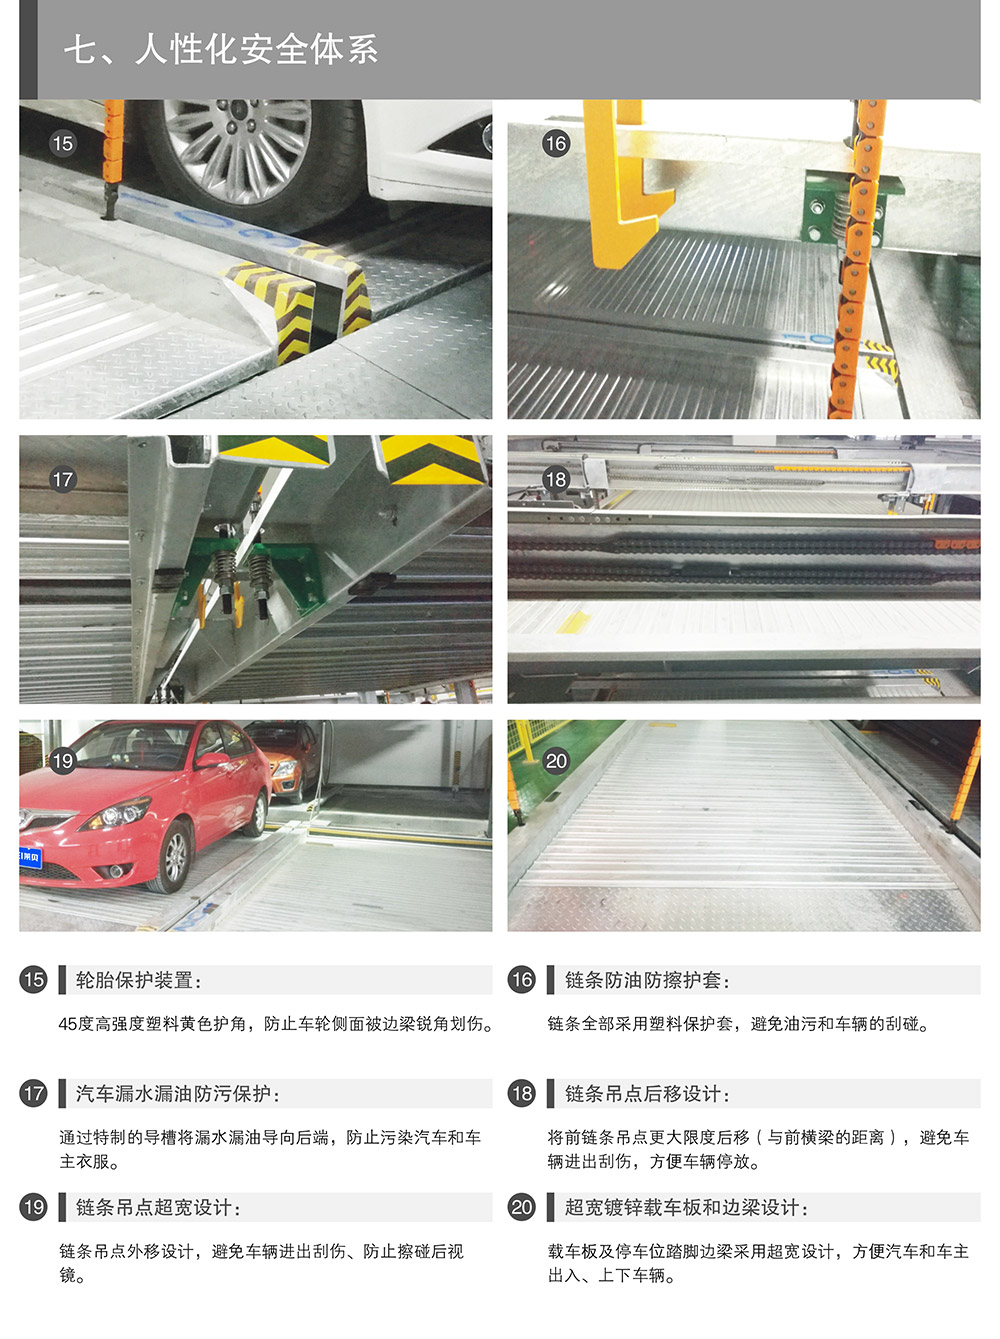 四川成都四至六层PSH4-6升降横移式立体停车设备人性化安全体系.jpg